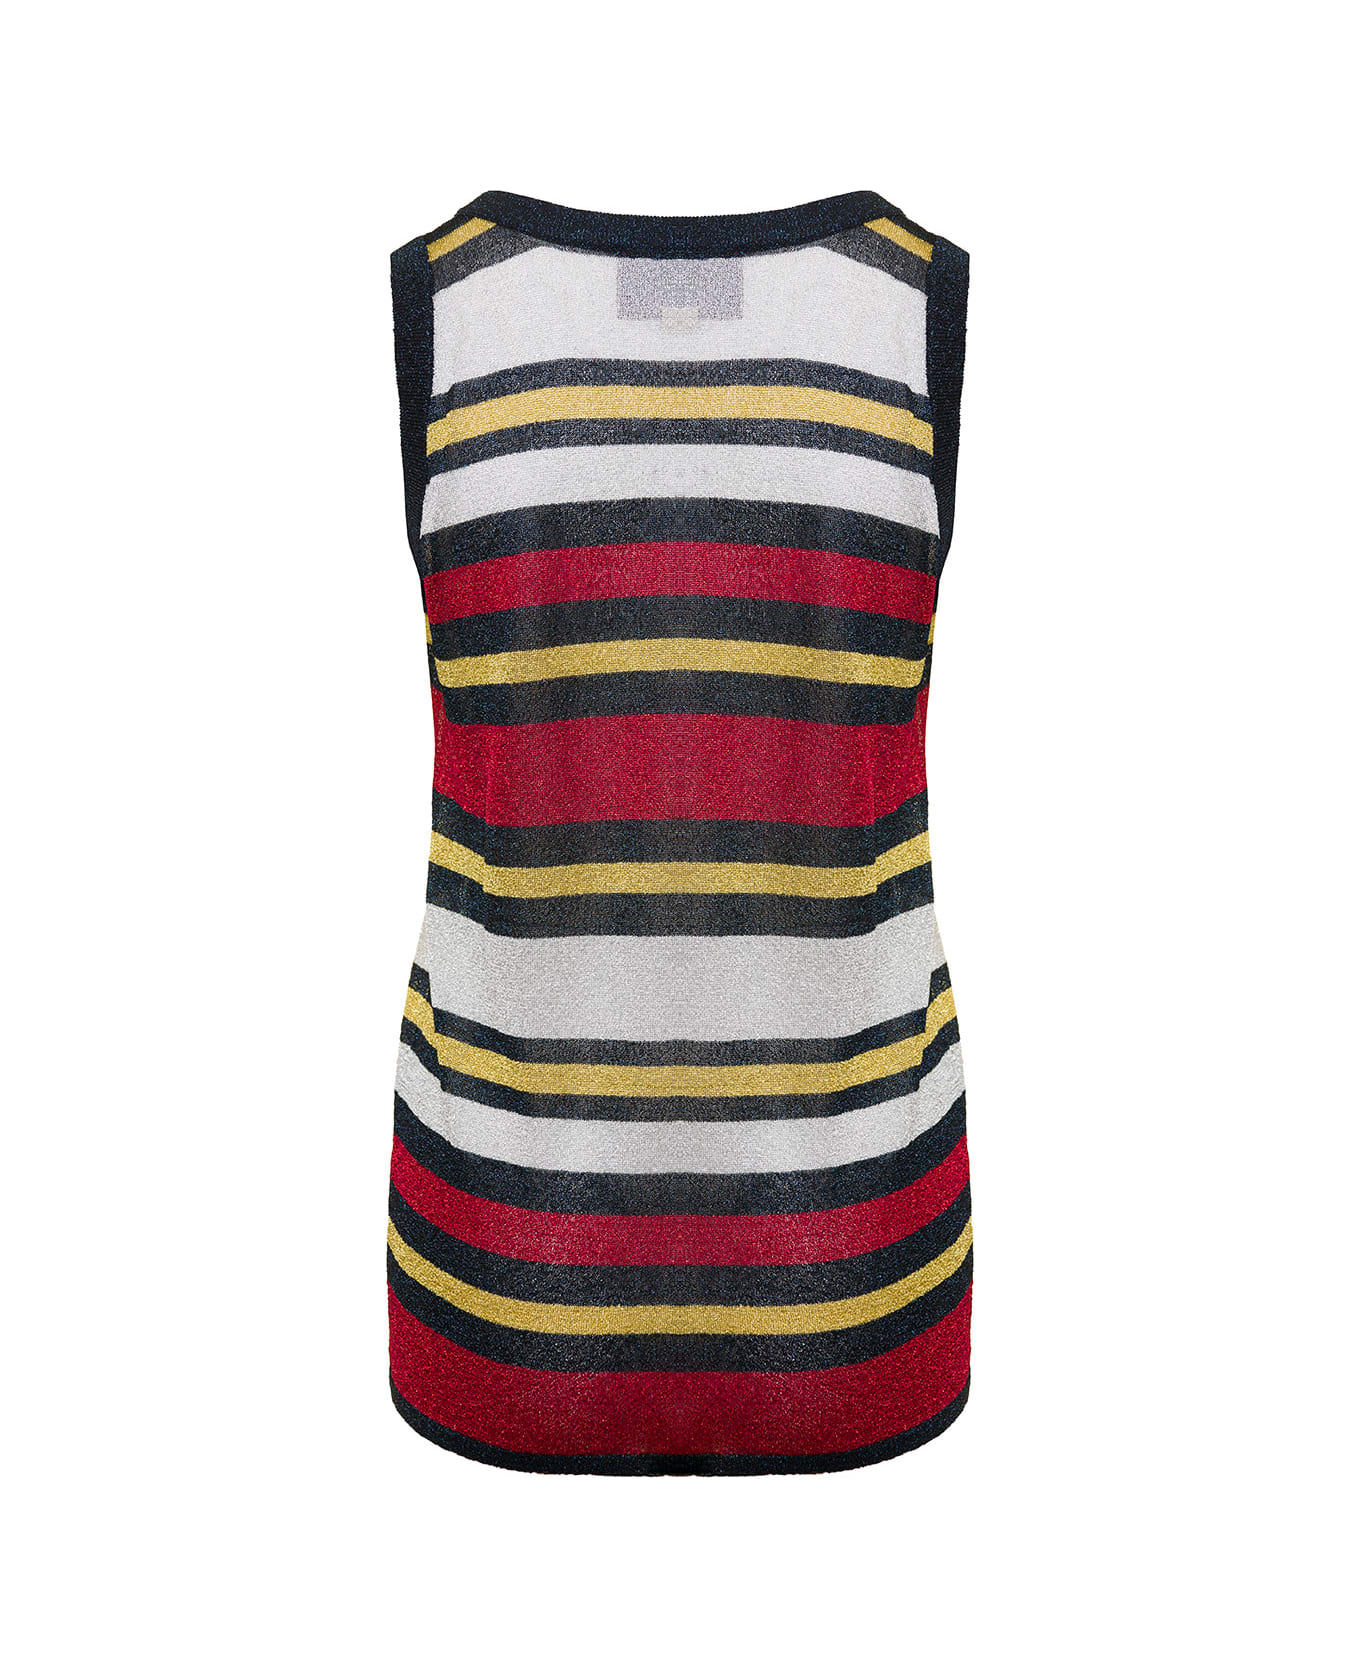 Gucci Multicolor Sleeveless Striped Top In Lurex Woman - Multicolor